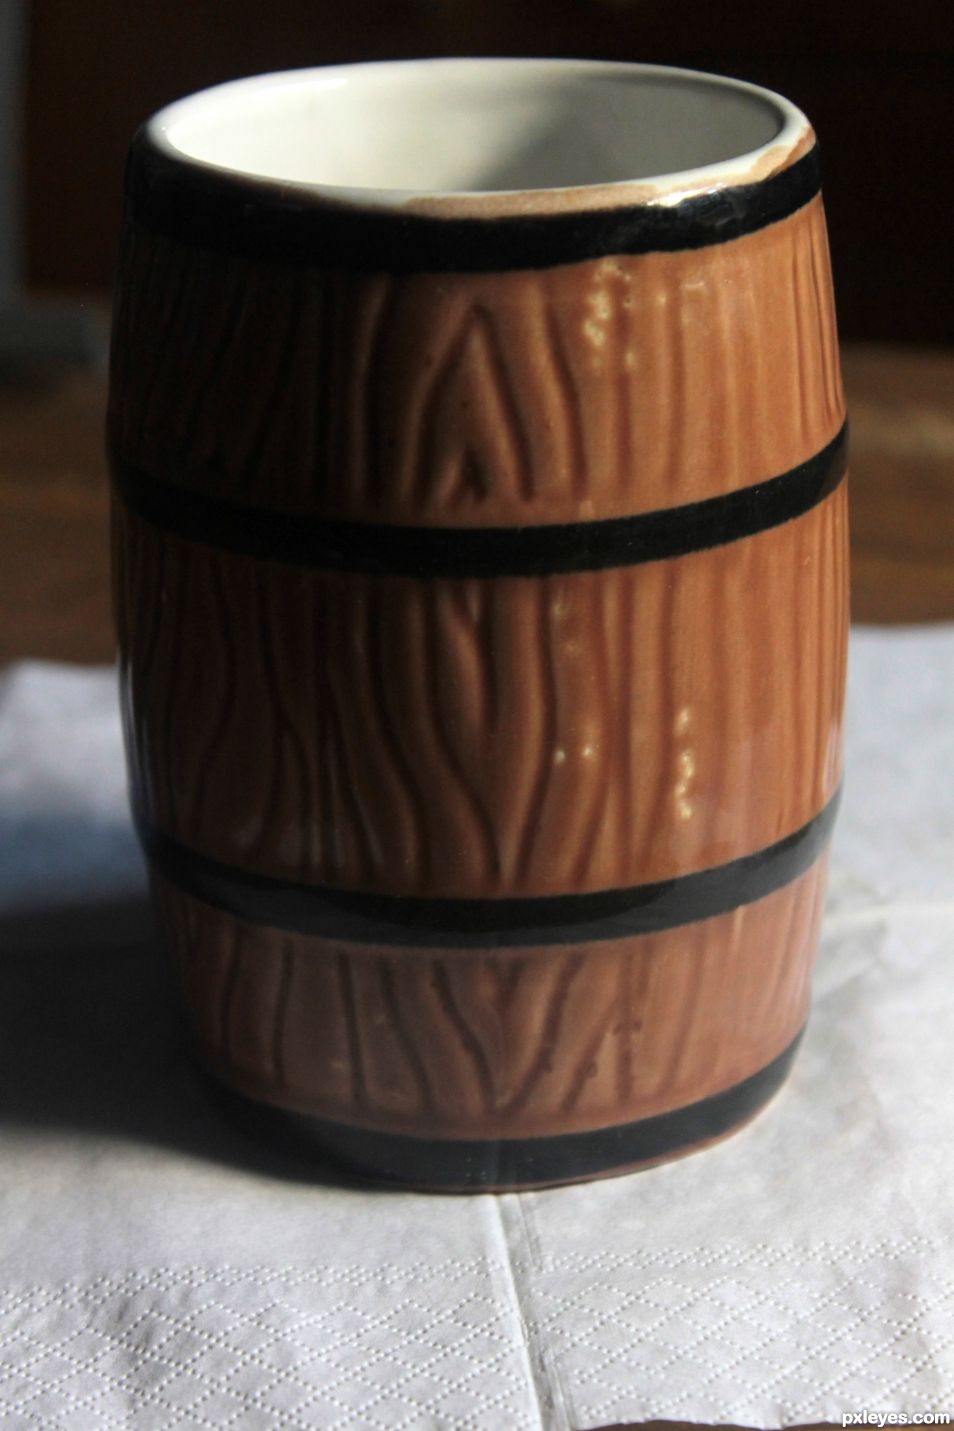 The barrel